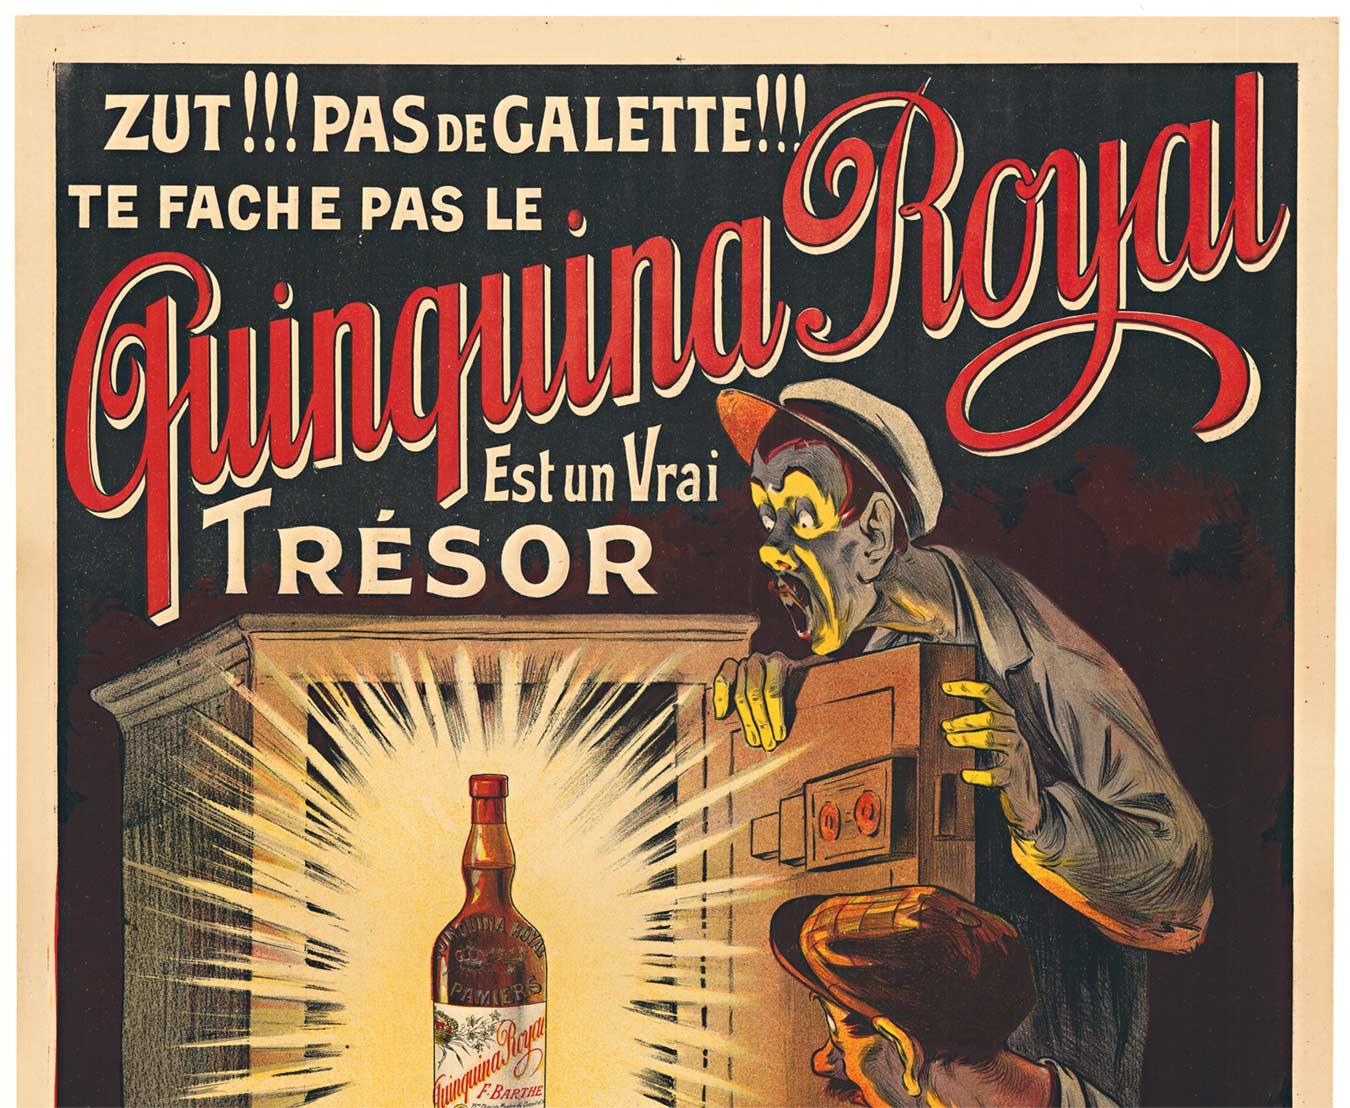 Original Quinquina Royal Est un vrai trésor vintage liquor poster  c.1902 - Print by Eugene Oge